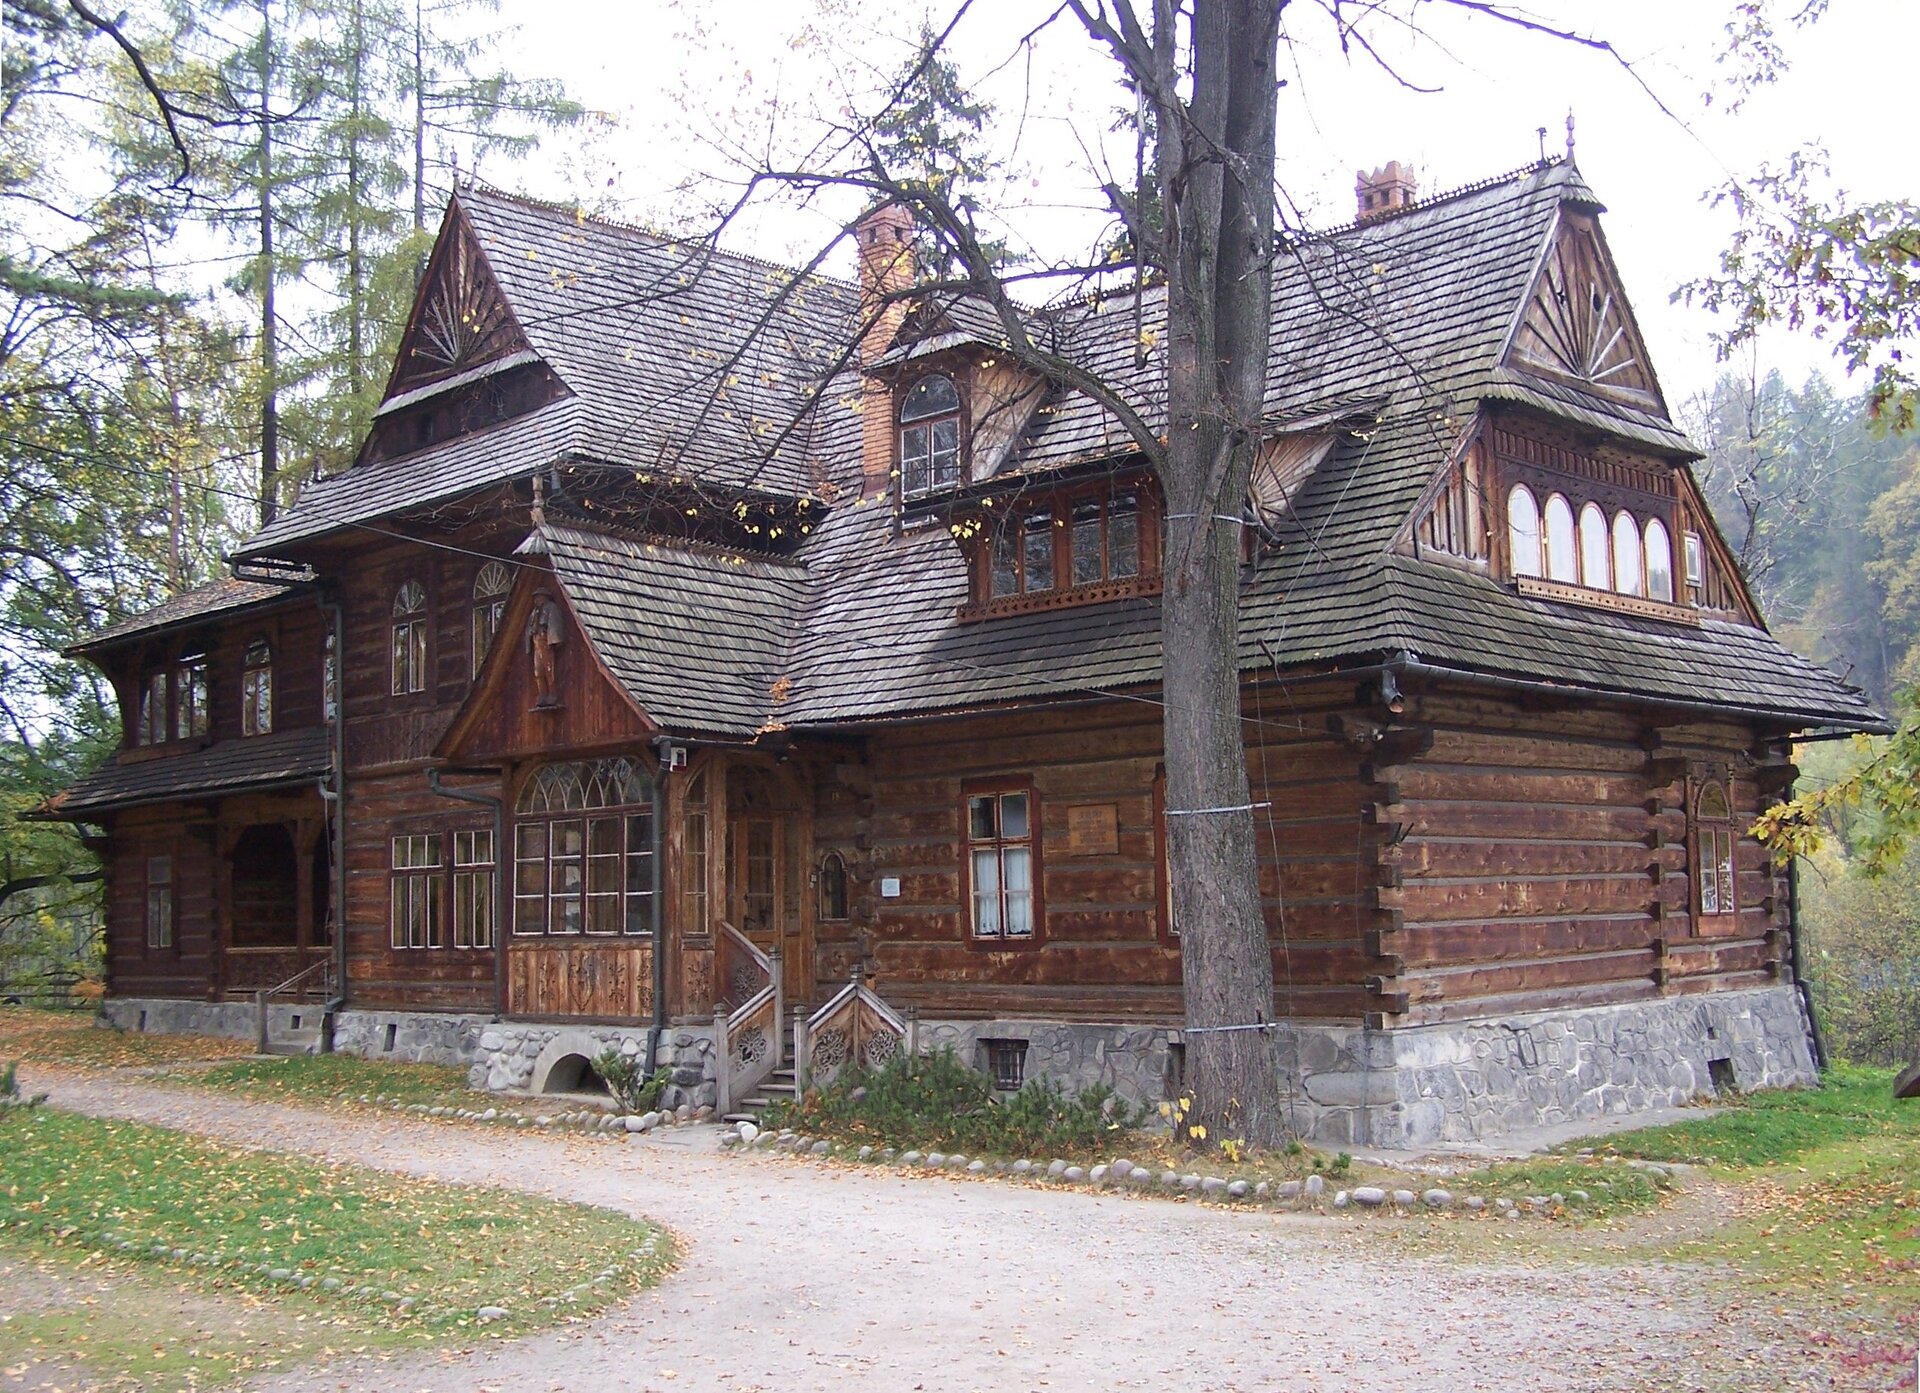 Zdjęcie przedstawia drewniany dom w góralskim stylu. Ma liczne okna - półokrągłe w górnej części. Okna są różnej wielkości. Dach jest spadzisty. Dom stoi w otoczeniu drzew.  